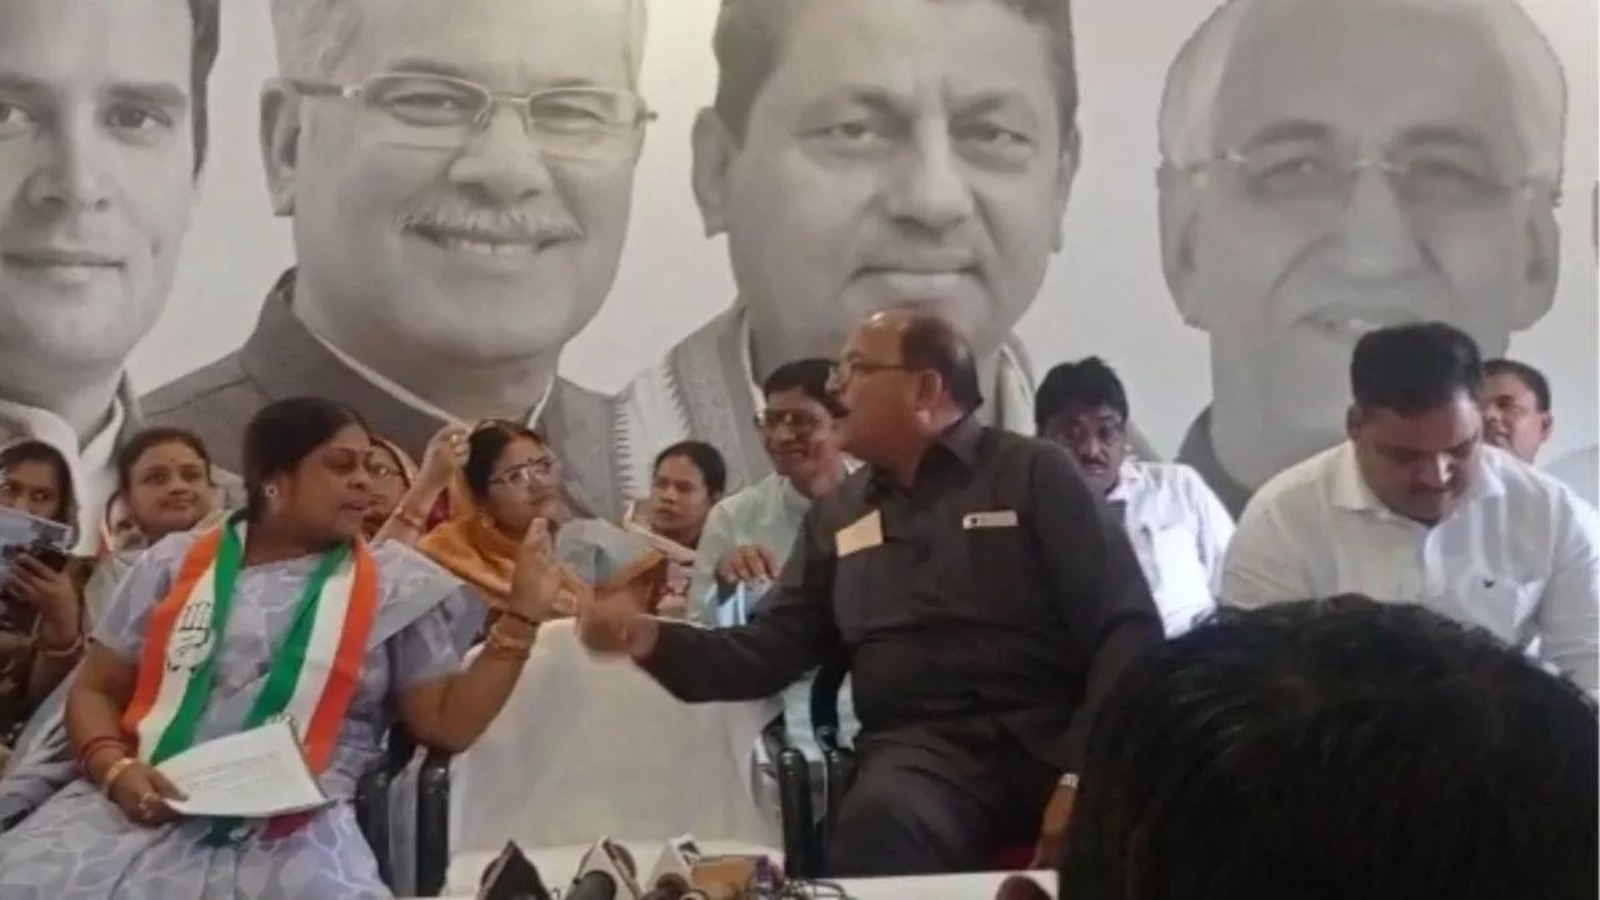 Video : छत्तीसगढ़ में राहुल गांधी के समर्थन के लिए PC कर रहे थे कांग्रेसी, खुद ही भिड़ गए मंच पर कुर्सी के लिए 